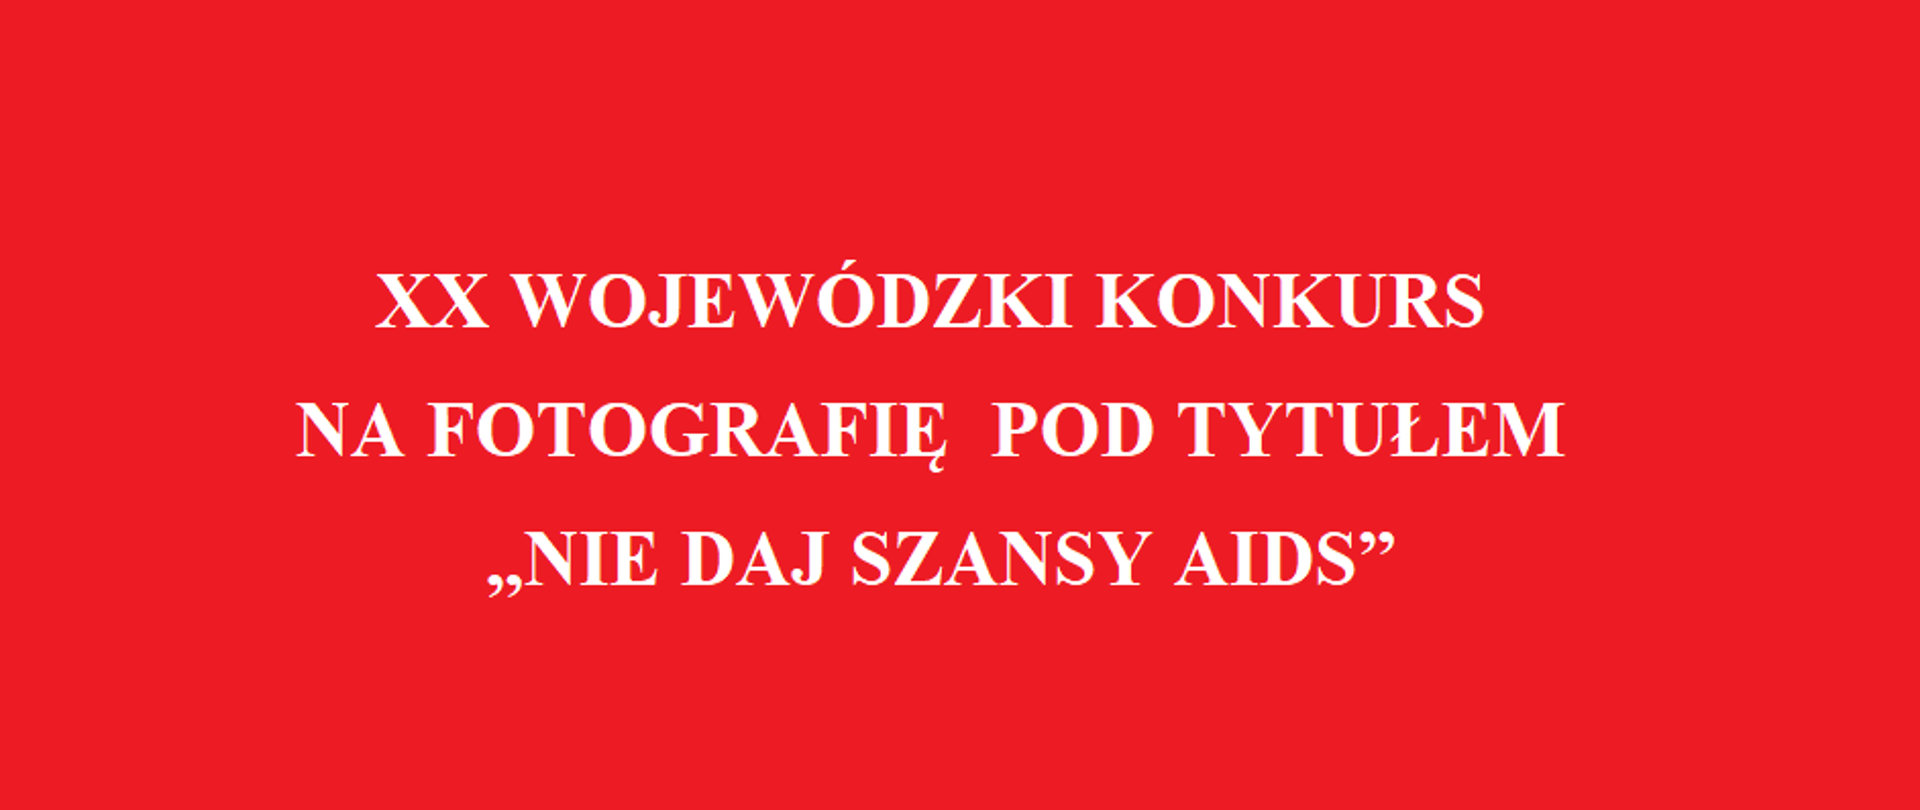 XX wojewódzki konkurs na fotografię pod tytułem "Nie daj szansy AIDS"